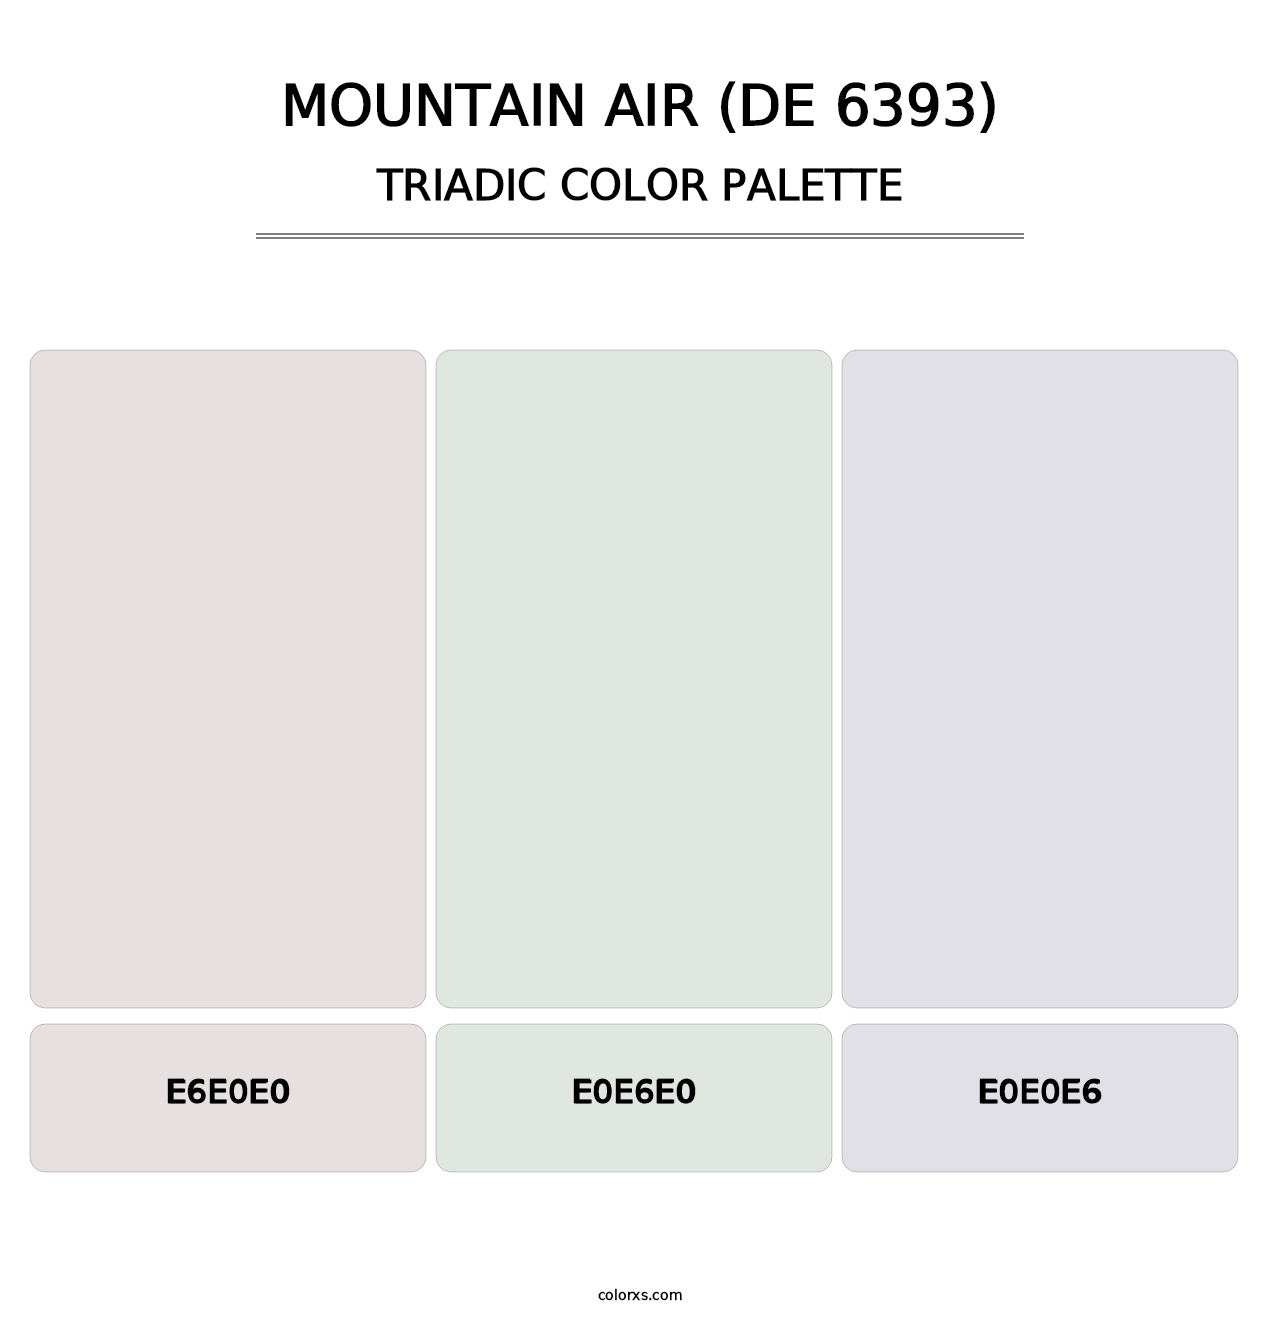 Mountain Air (DE 6393) - Triadic Color Palette